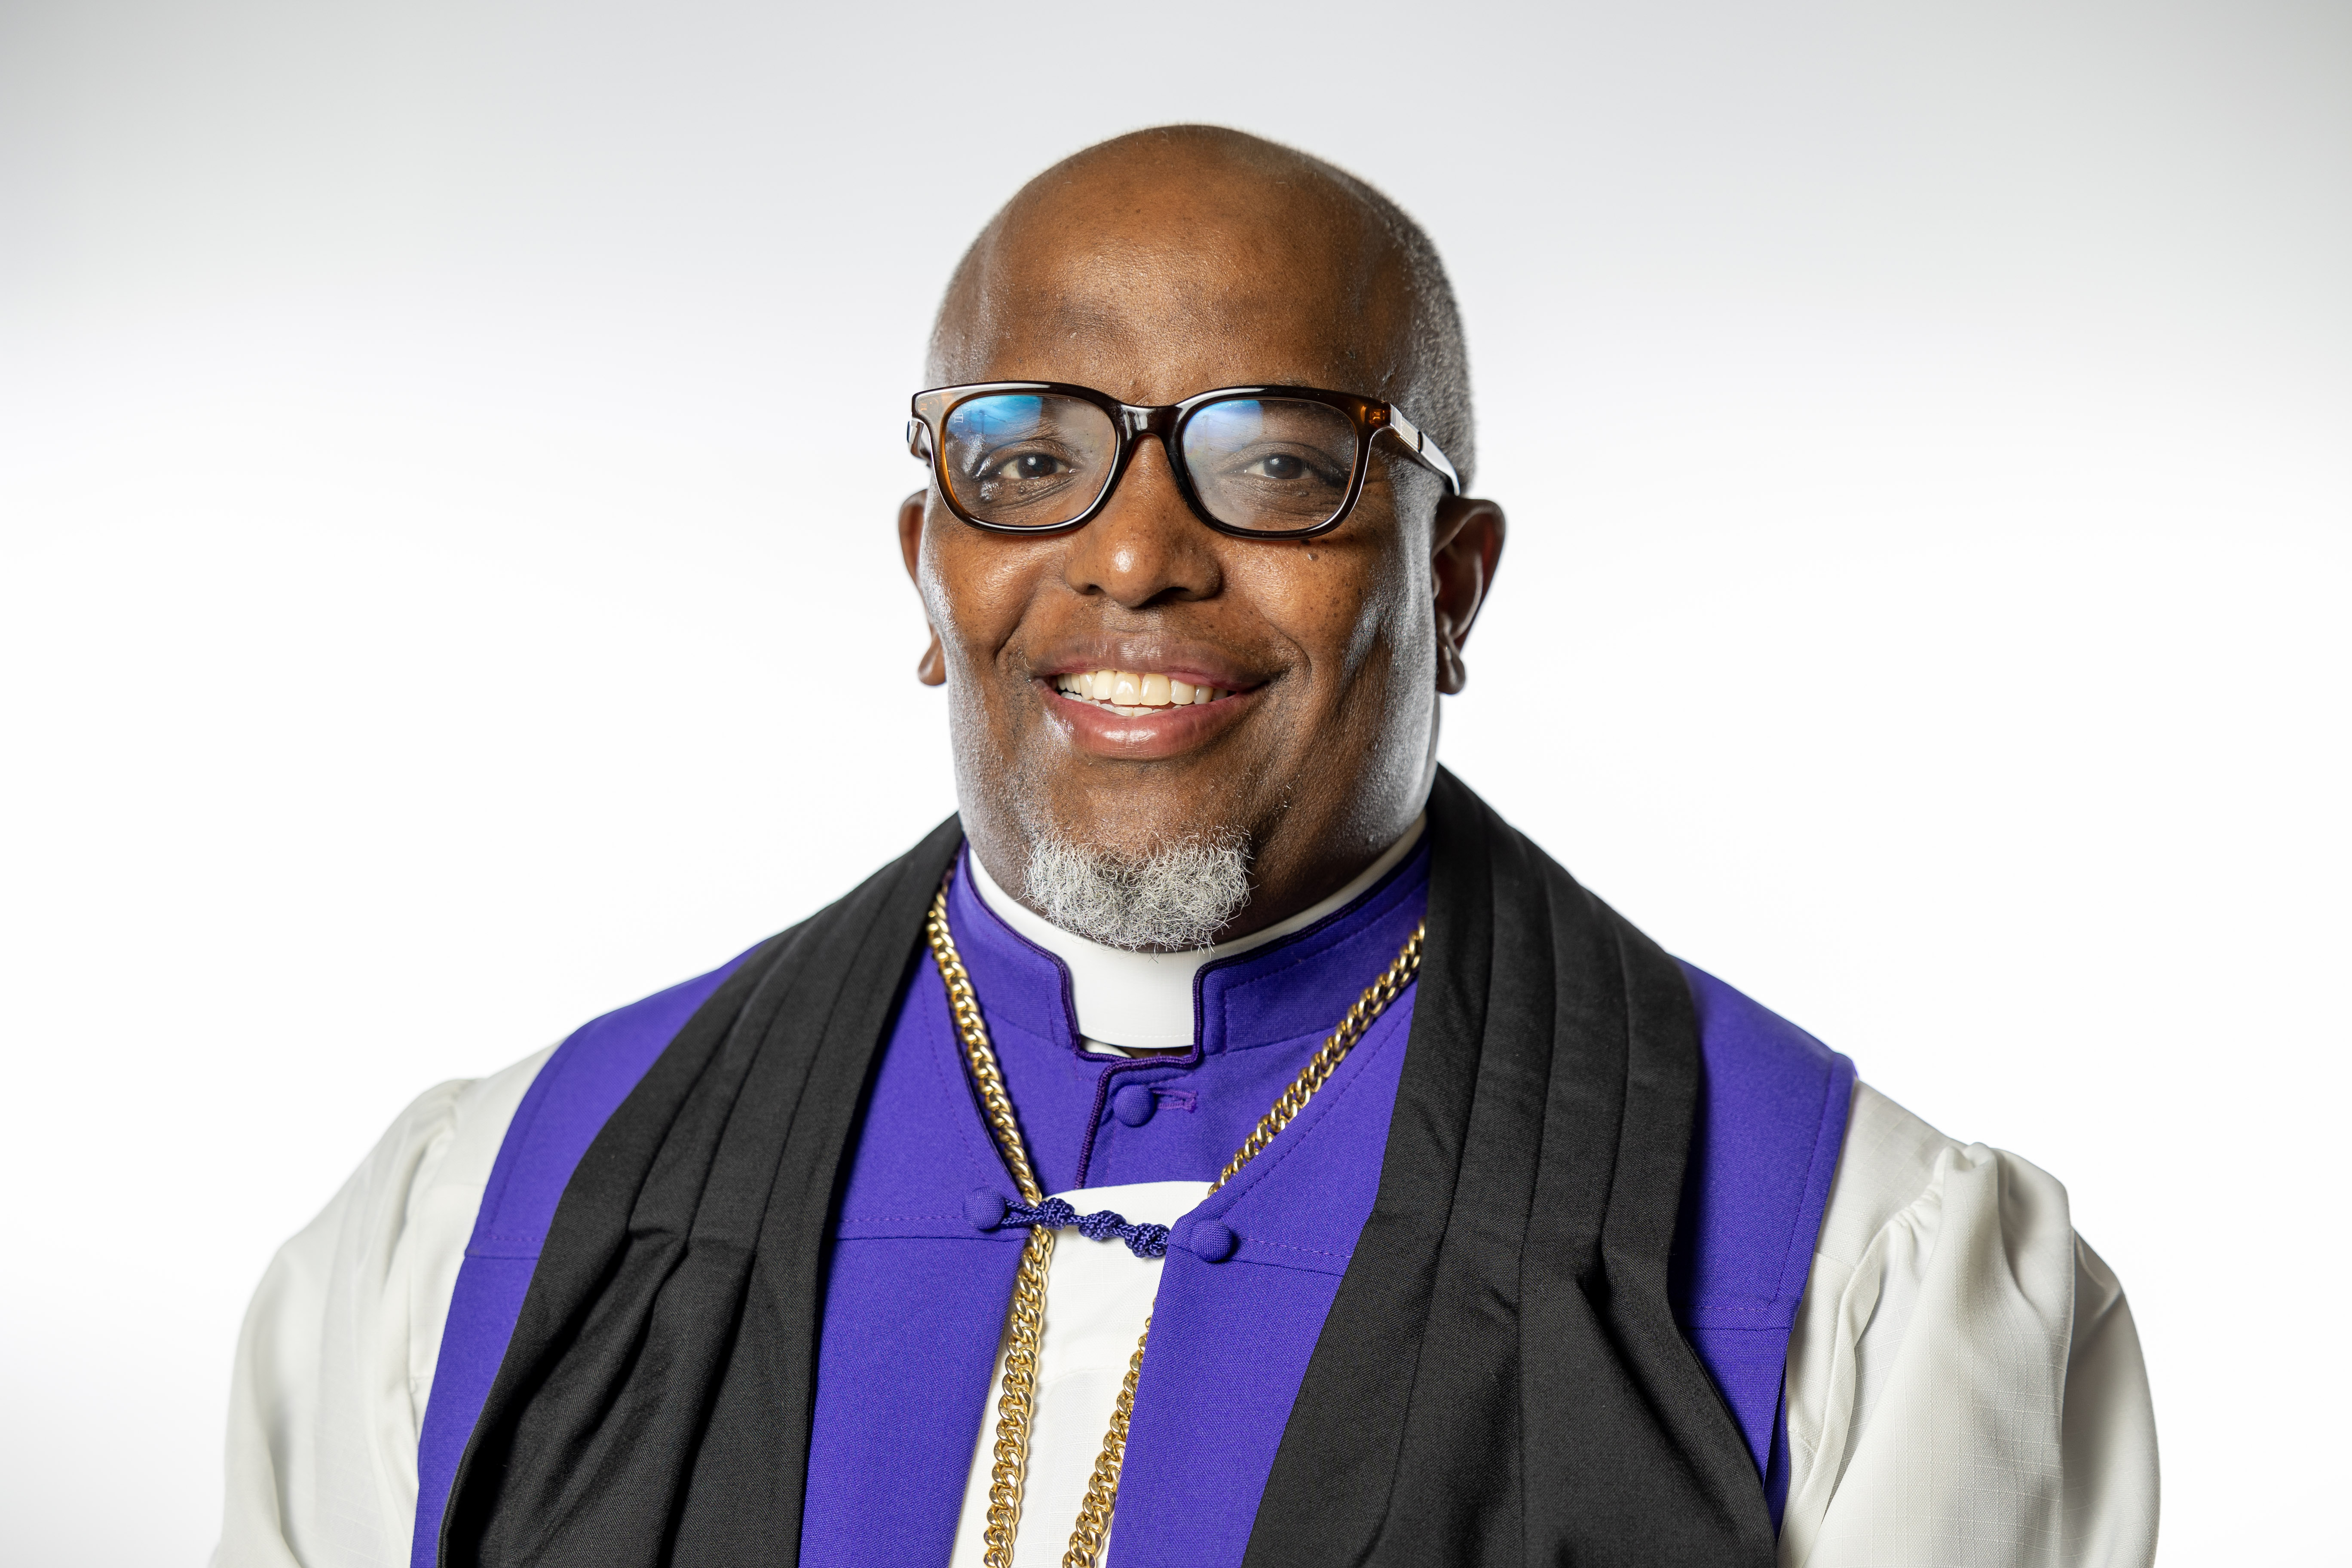 Bishop Dwayne K Pickett